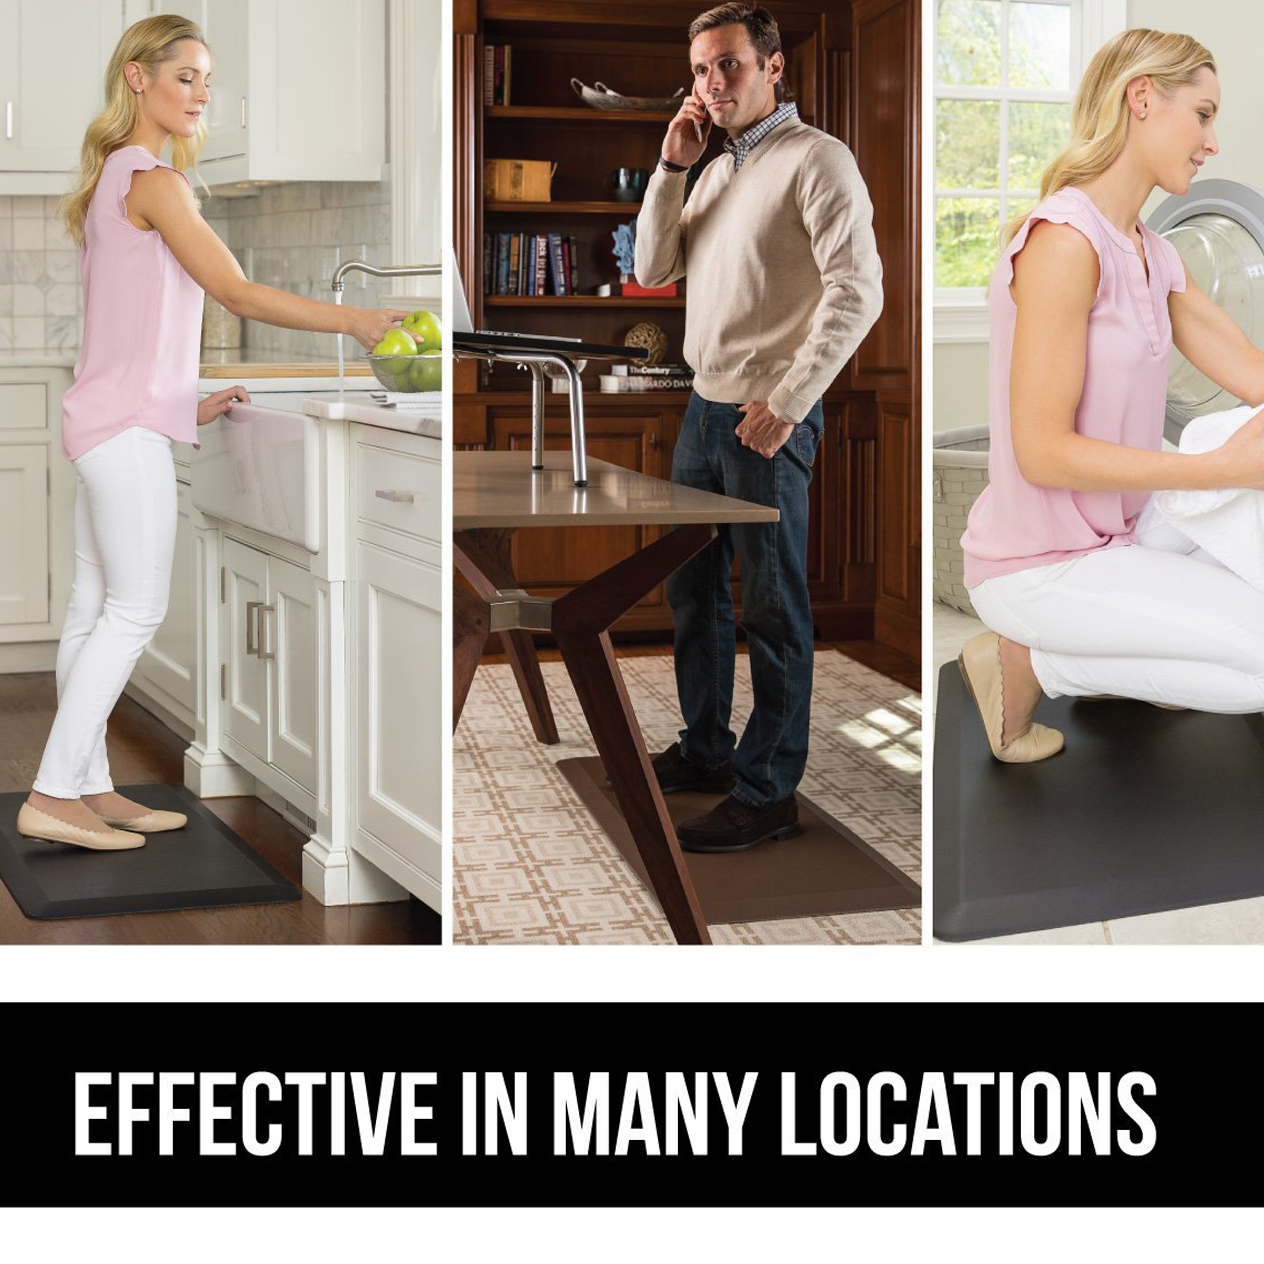 Anti-Fatigue Comfort Mat – Buffalo Mat for Standing Desks – DeskStand, Inc.